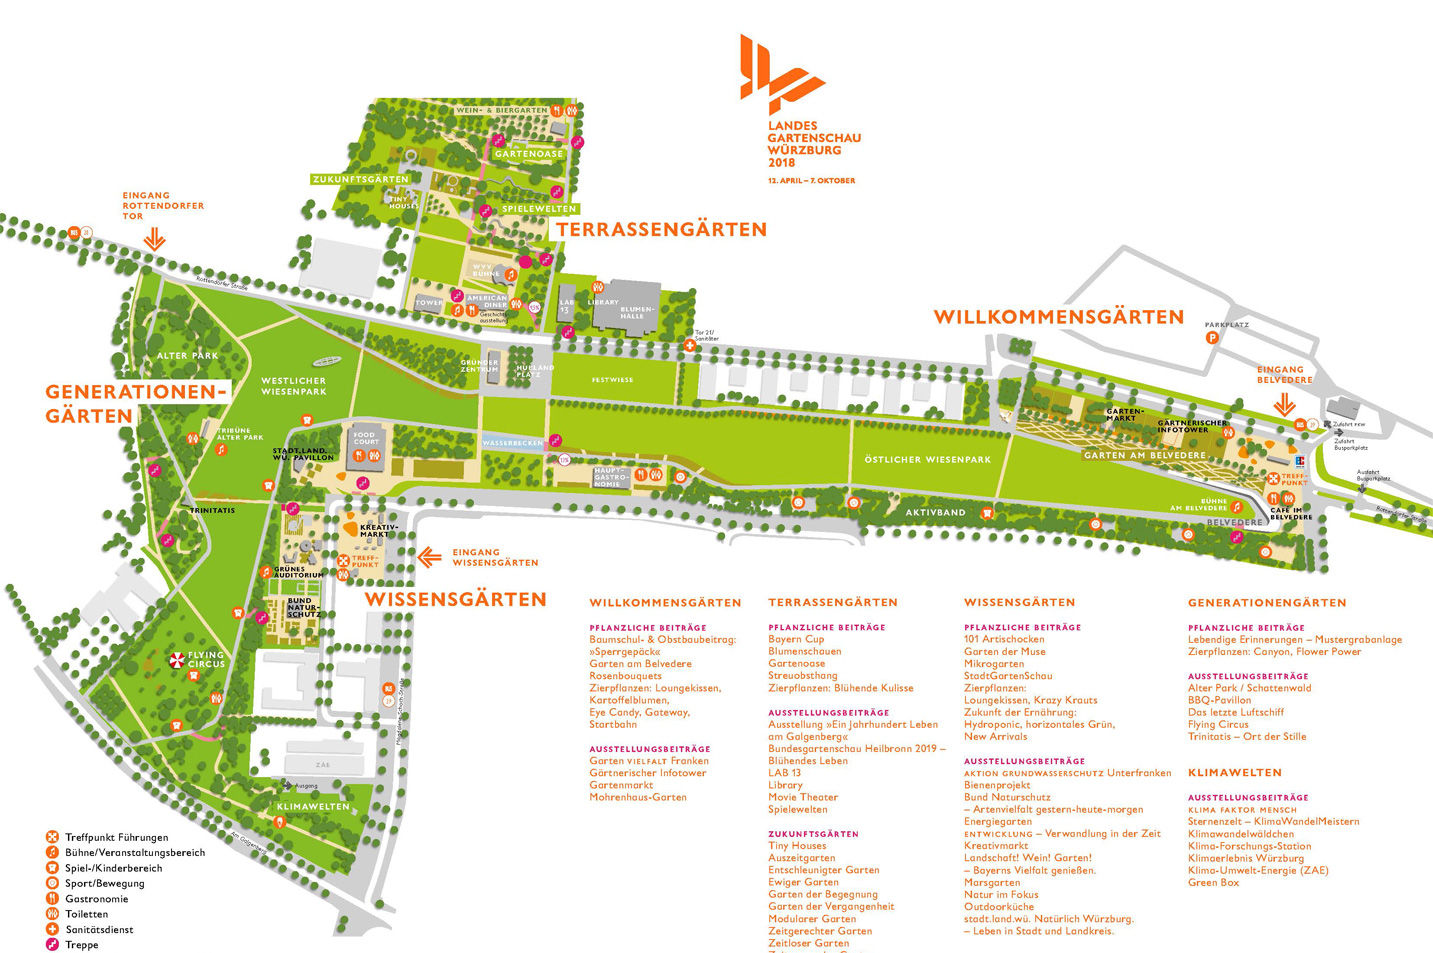 Geländeplan der Landesgartenschau 2018 in Würzburg.